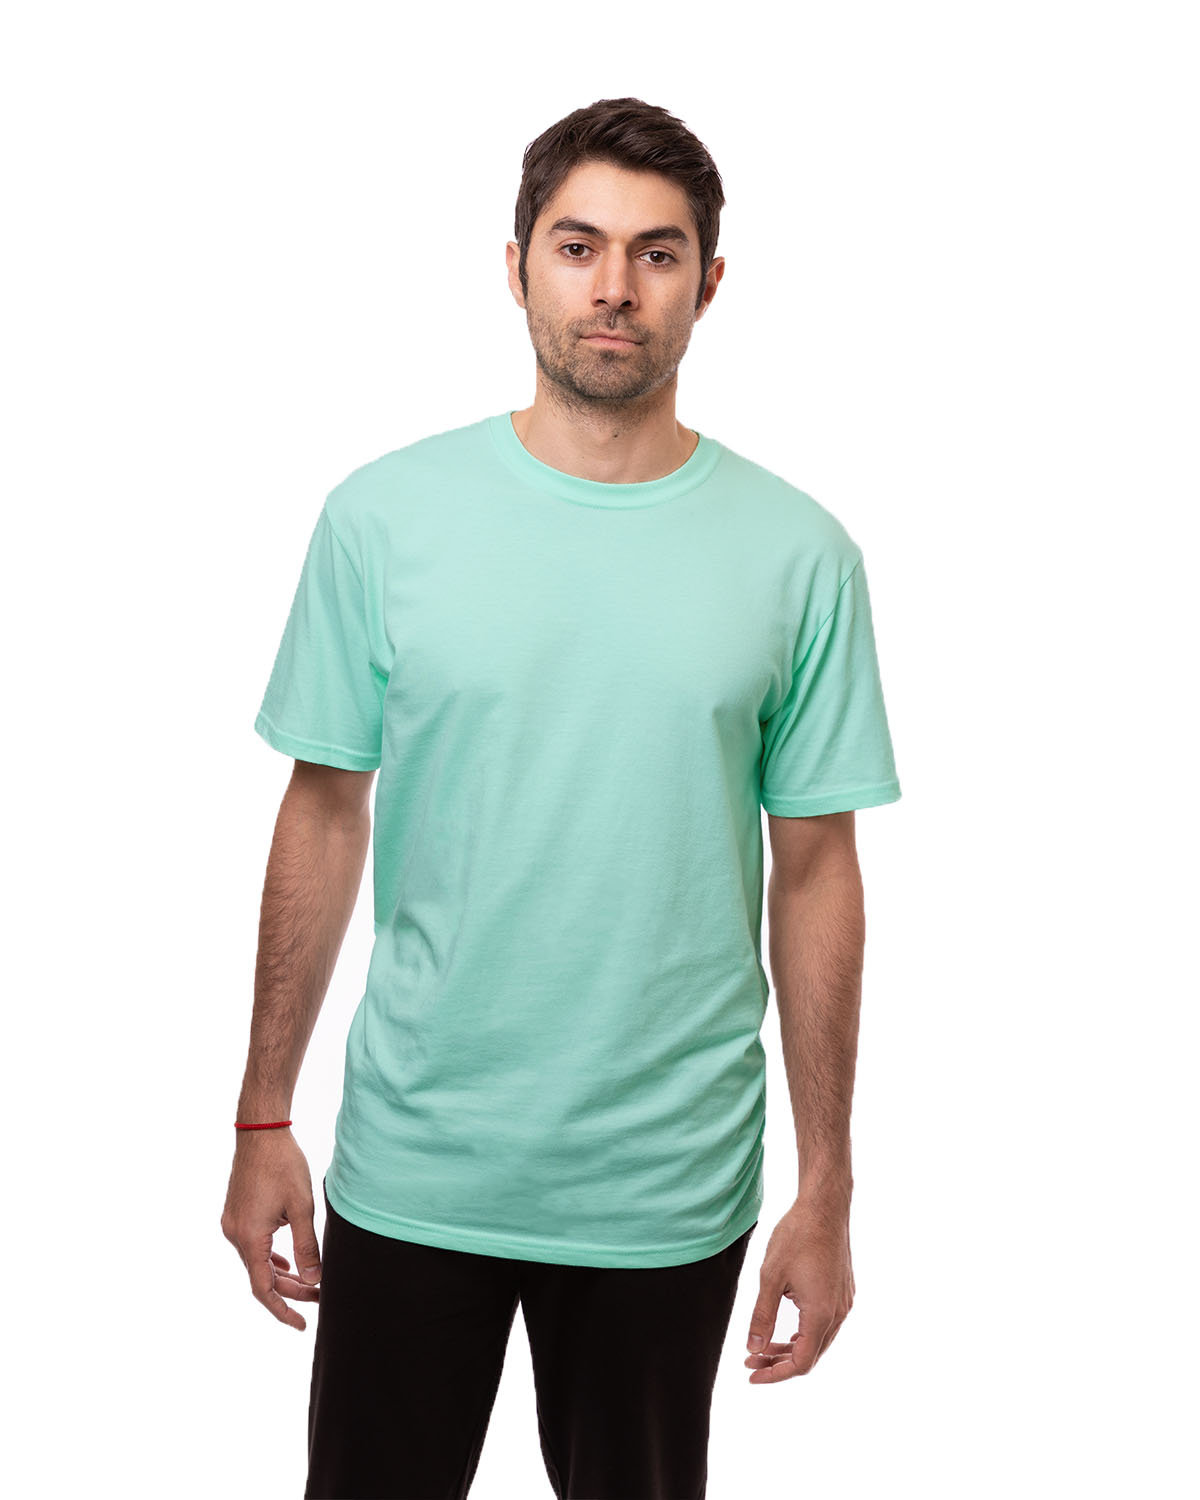 econscious Unisex Classic Short-Sleeve T-Shirt sunwashed mint 